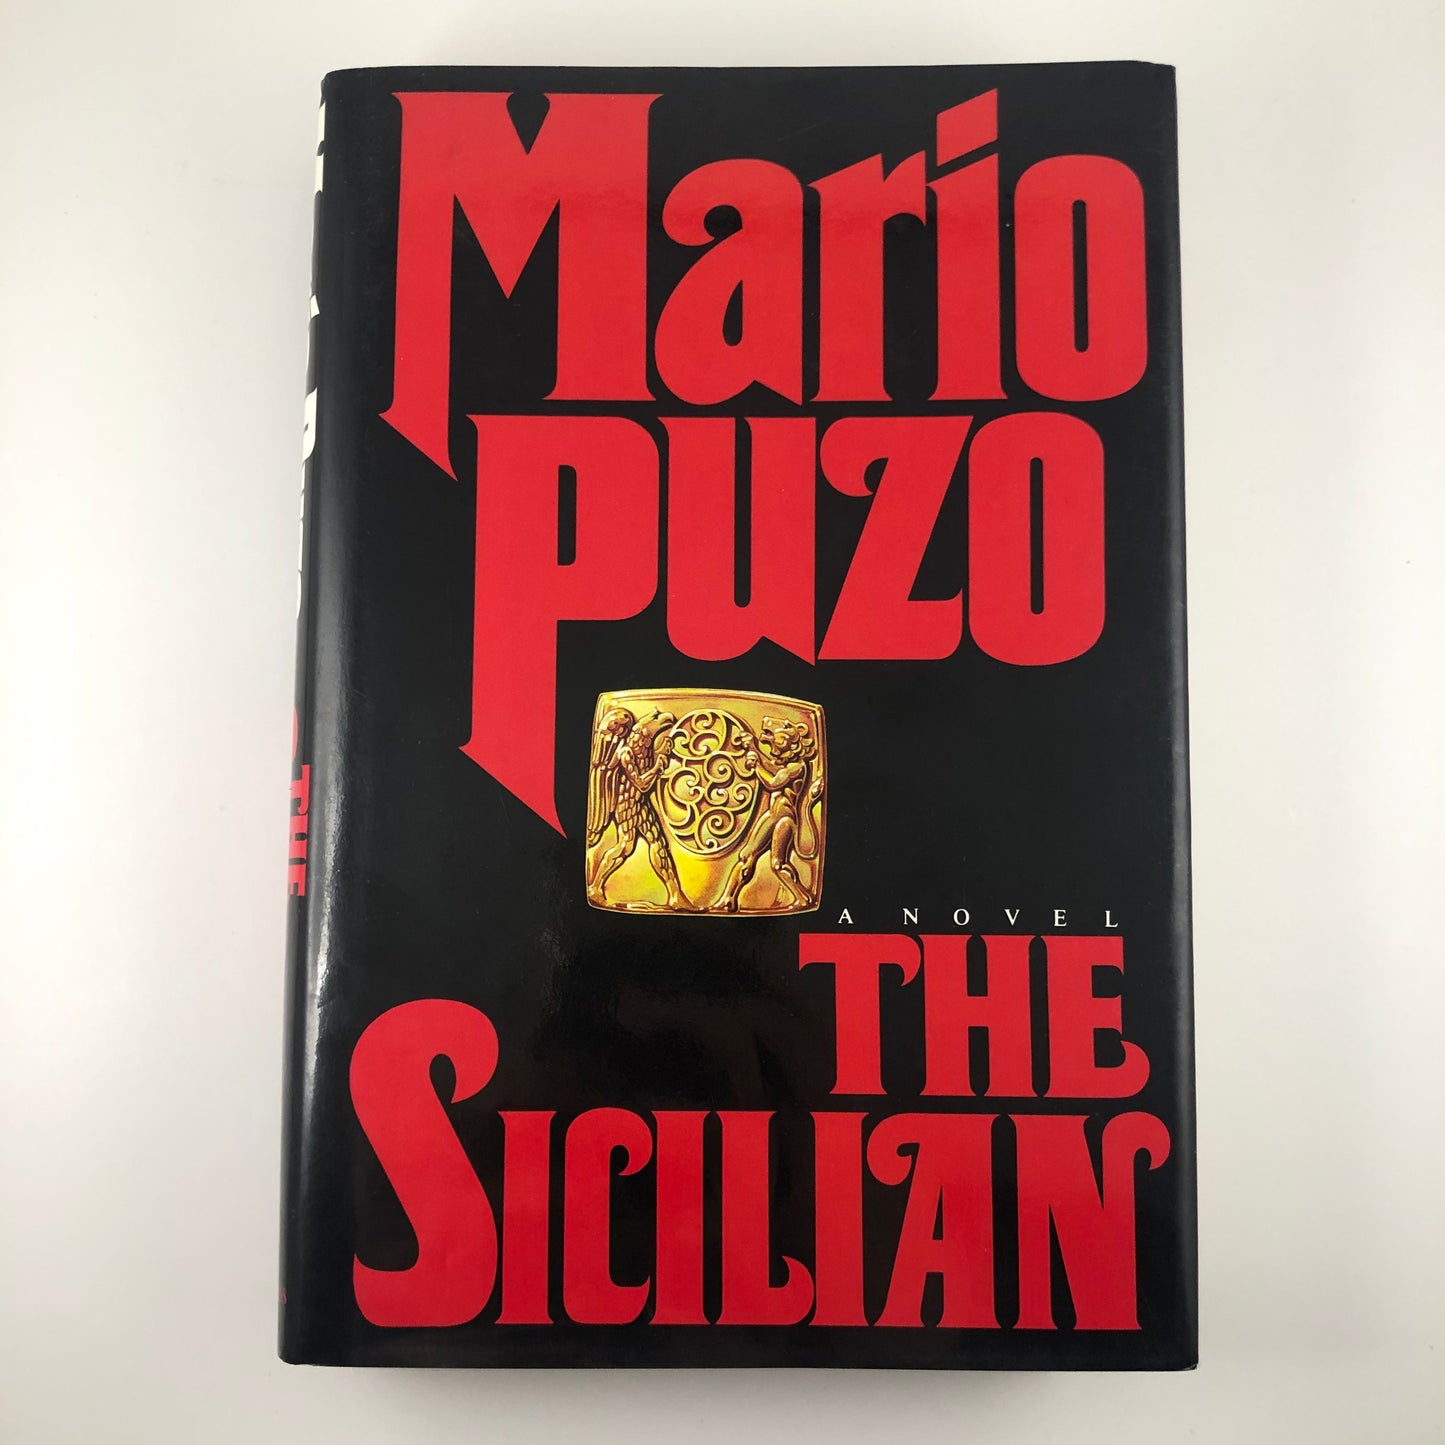 The Sicilian Default Title